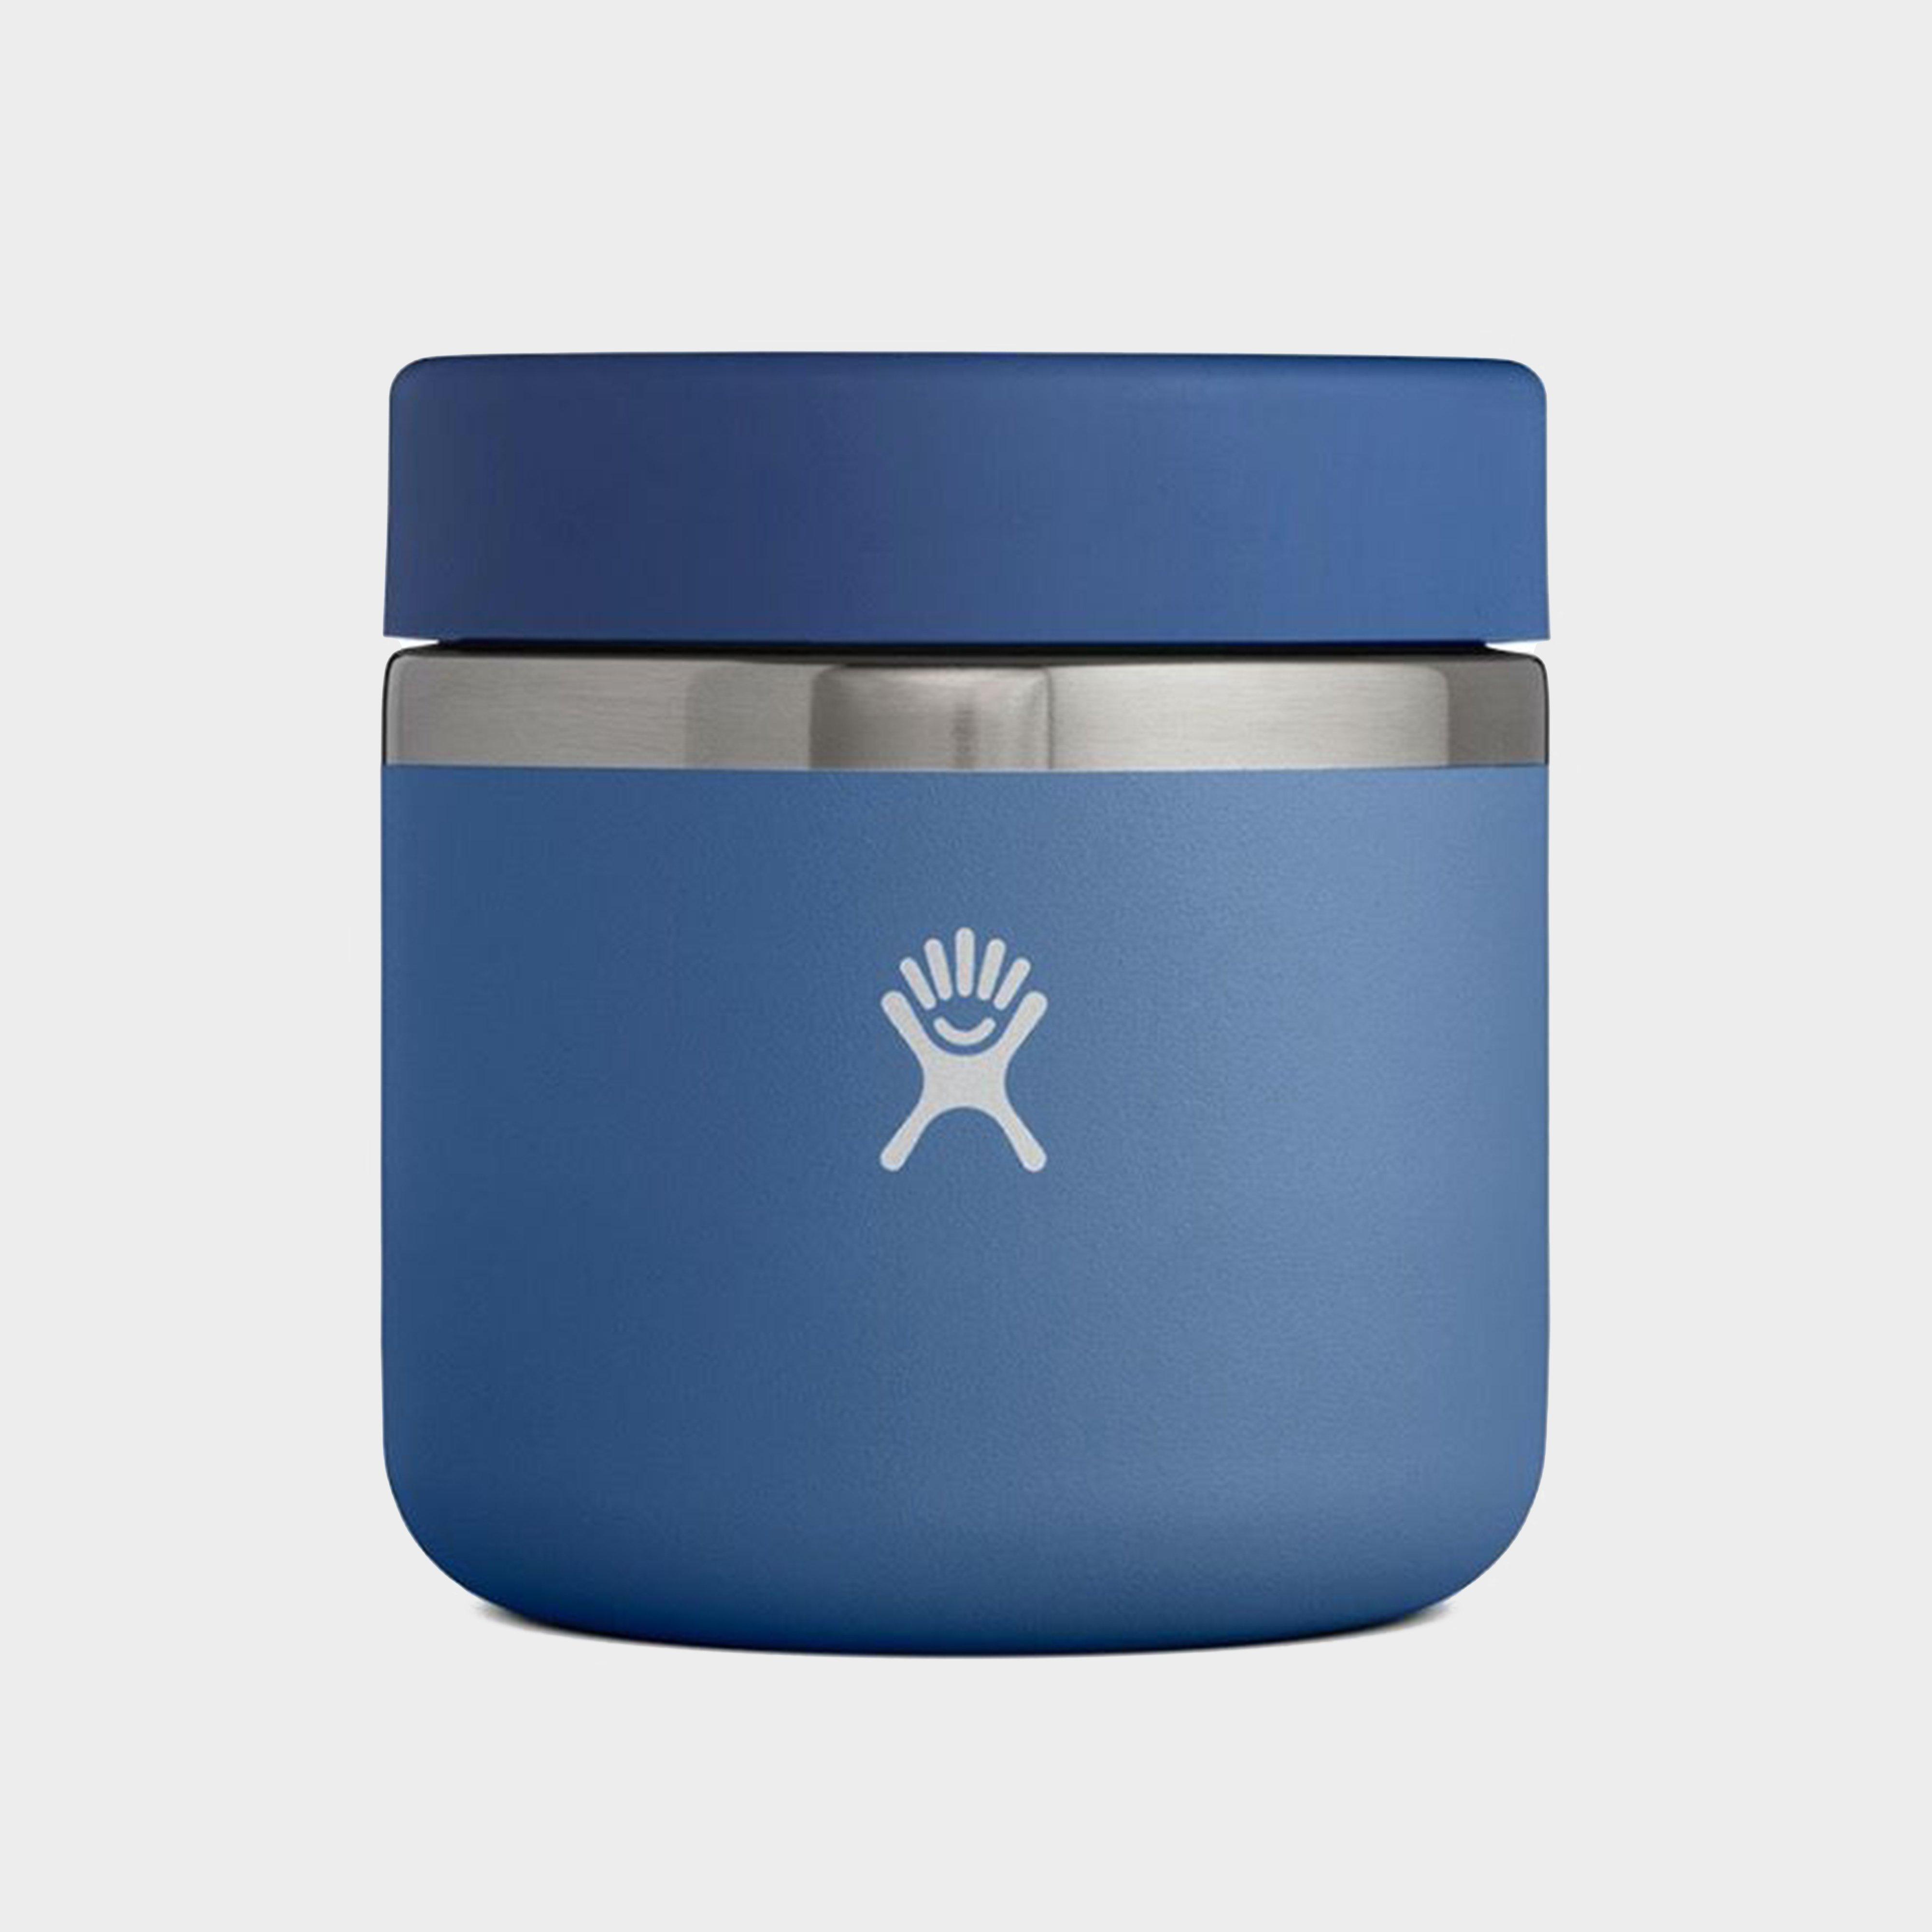 Hydro Flask 20oz Insulated Food Jar - Blue/blue  Blue/blue